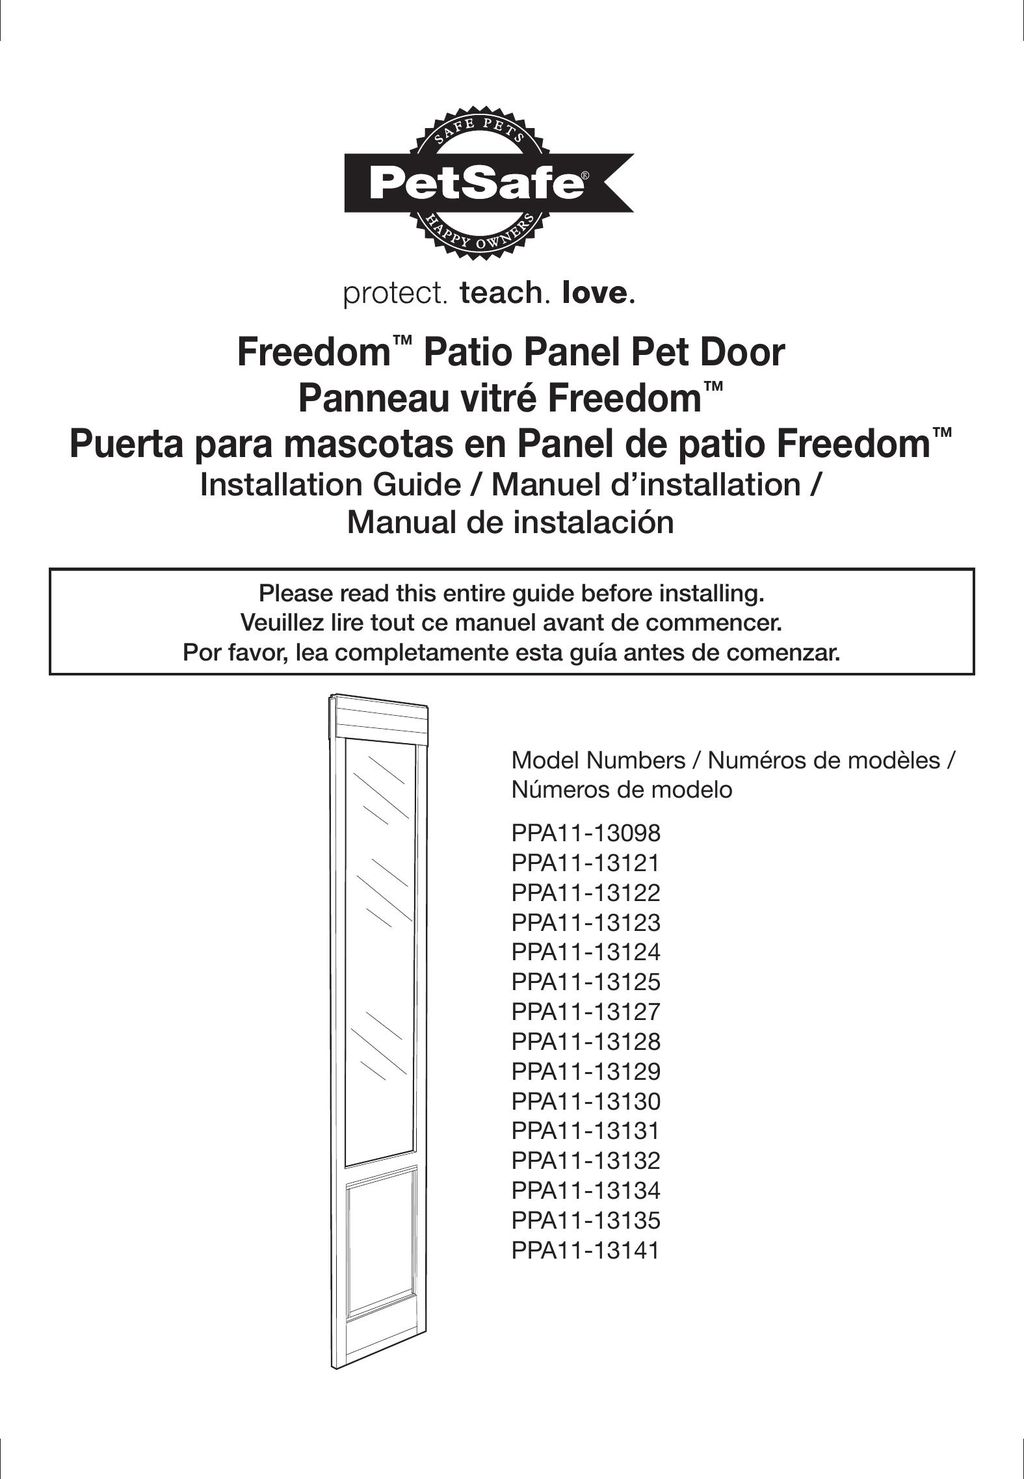 Petsafe PPA11-13124 Door User Manual